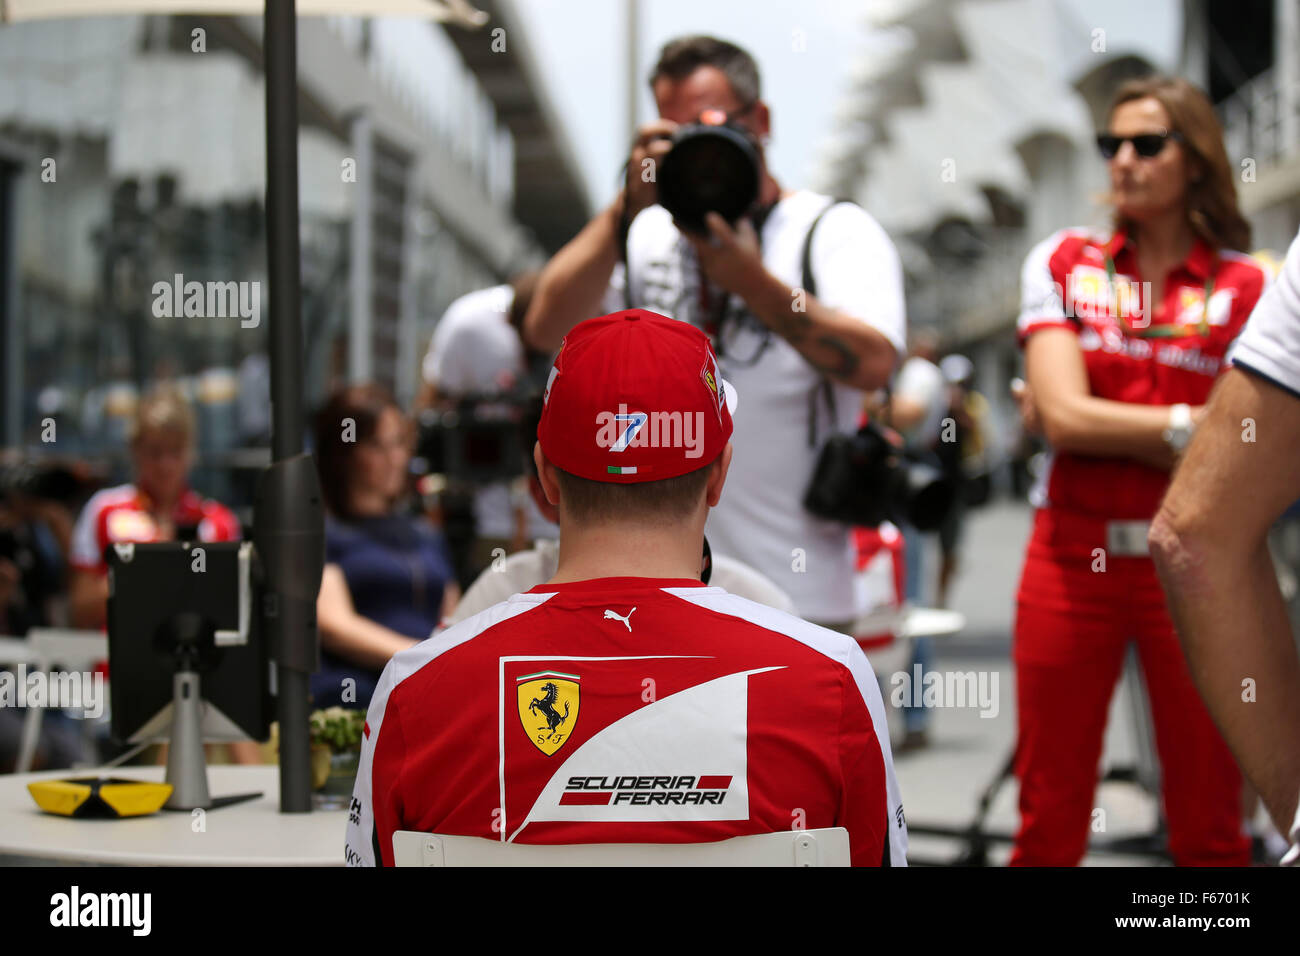 Motorsports: FIA Formula One World Championship 2015, Grand Prix of Brazil, #7 Kimi Raikkonen (FIN, Scuderia Ferrari), Stock Photo